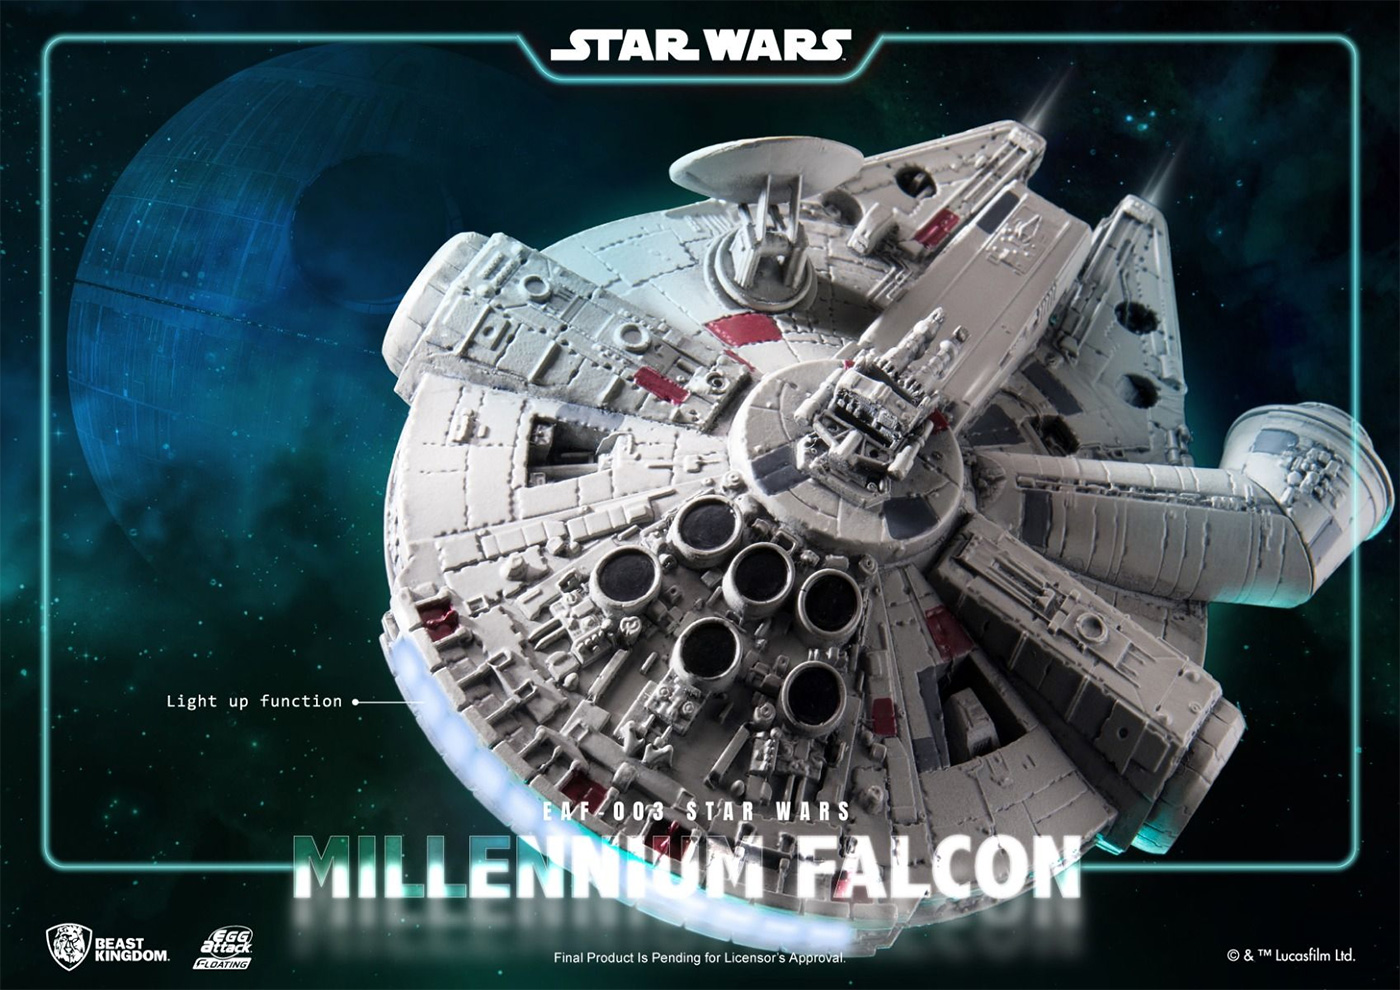 Millennium Falcon Egg Attack Floating Figure com Levitação Magnética (Star Wars)